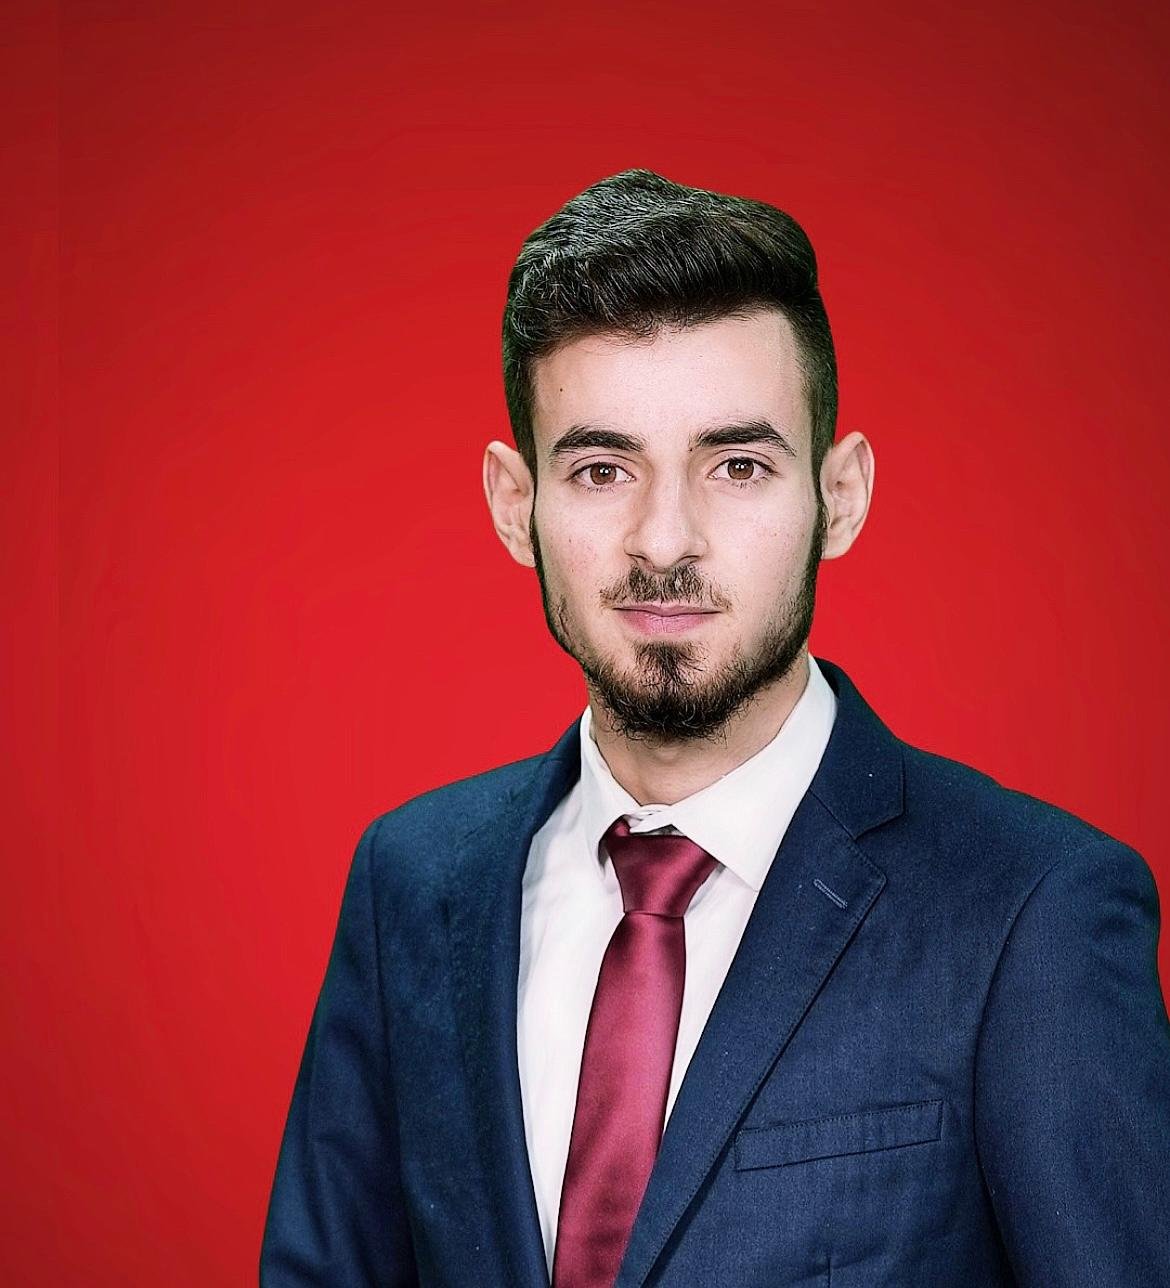 القيادي الشاب رازي طاطور من الرينة: المرشح الأصغر سنًا في انتخابات السلطات المحلية-0